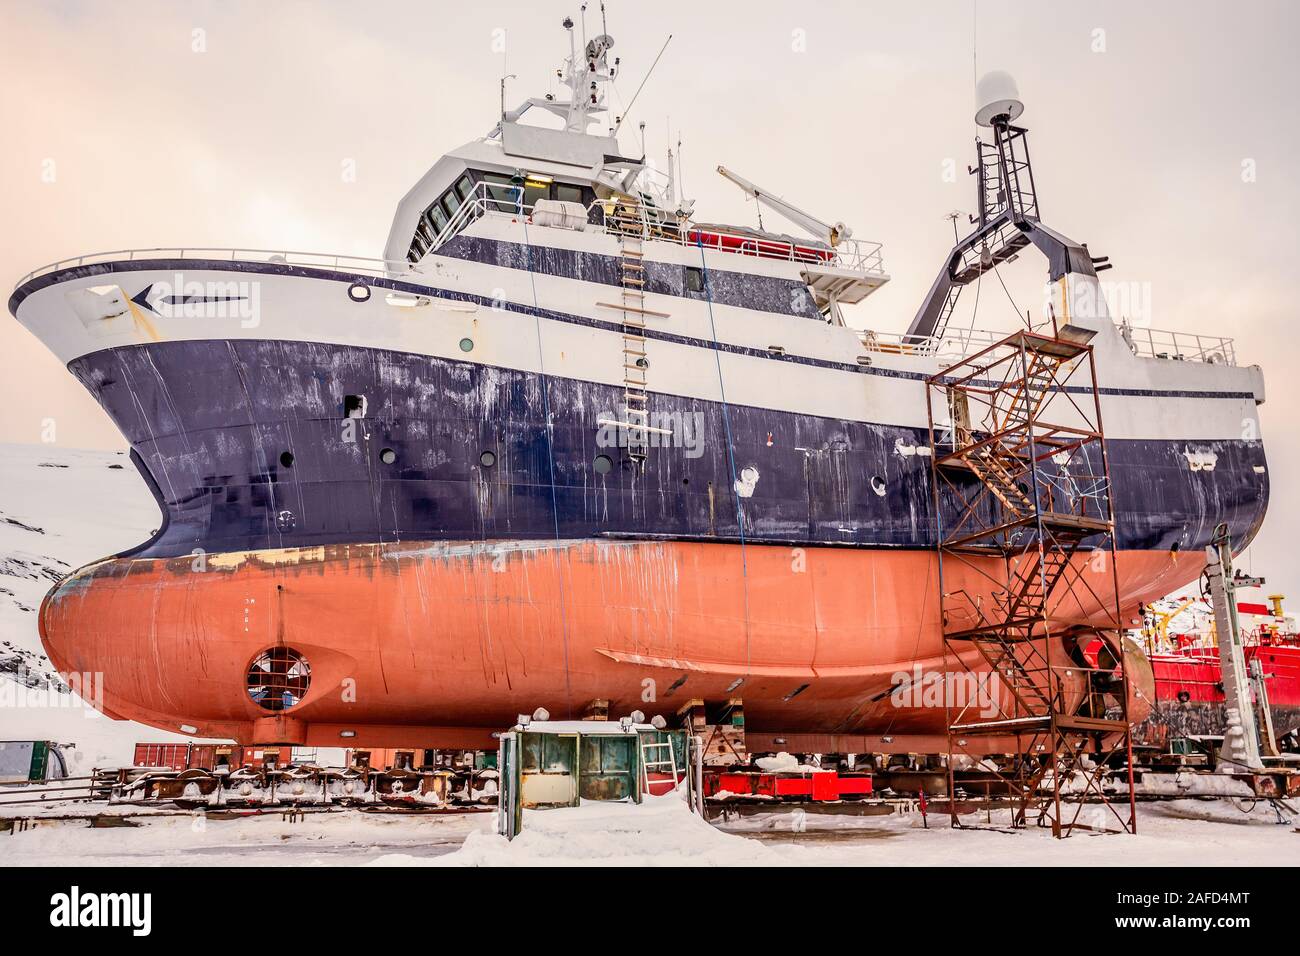 Les coques des navires de pêche dans l'arsenal sur l'entretien au cours de l'hiver, port de Nuuk, Groenland Banque D'Images